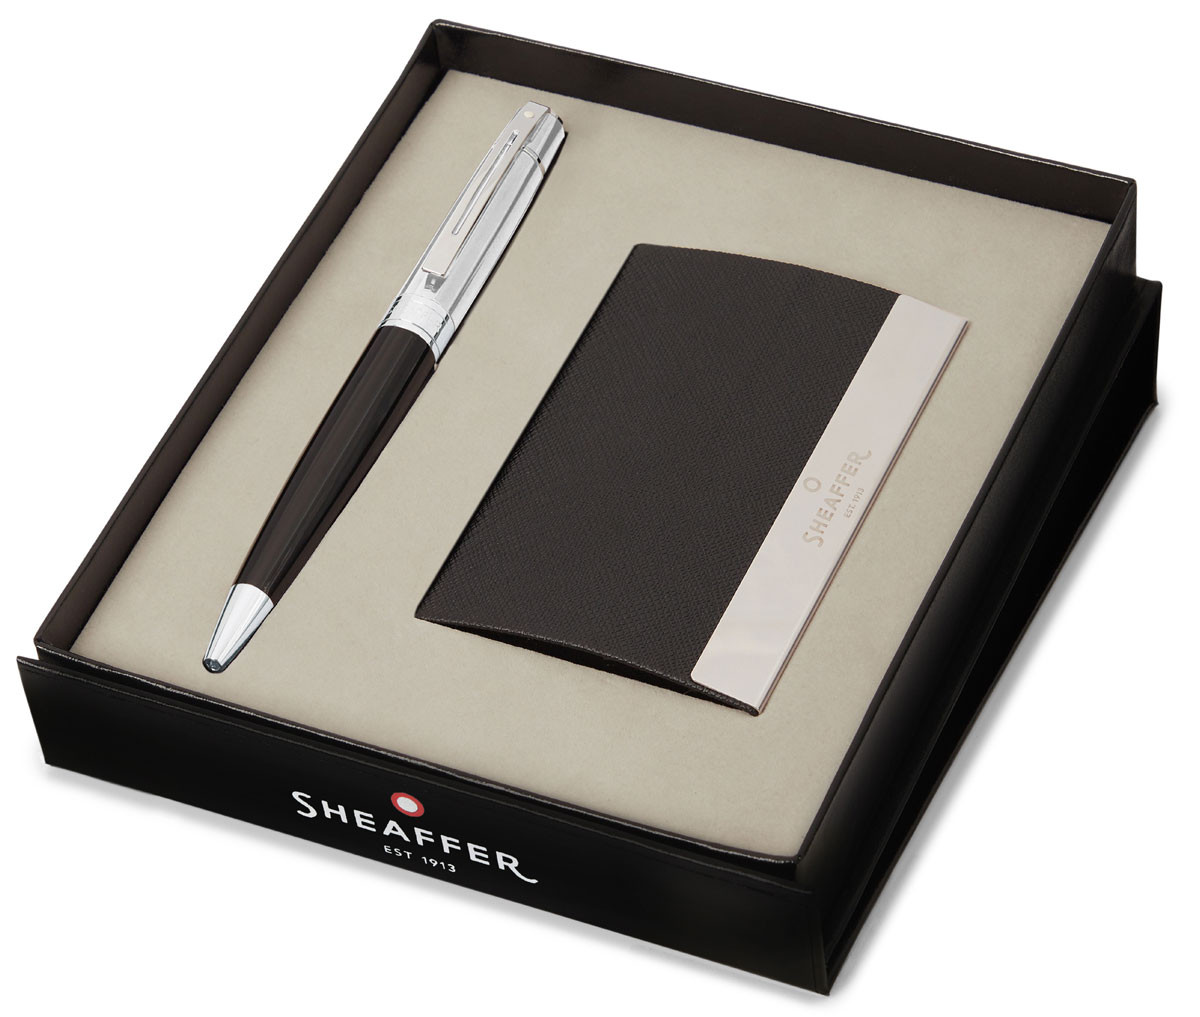 Sheaffer 100 Ballpoint Pen Gift Set - Gloss Black Chrome Trim with Business Card Holder